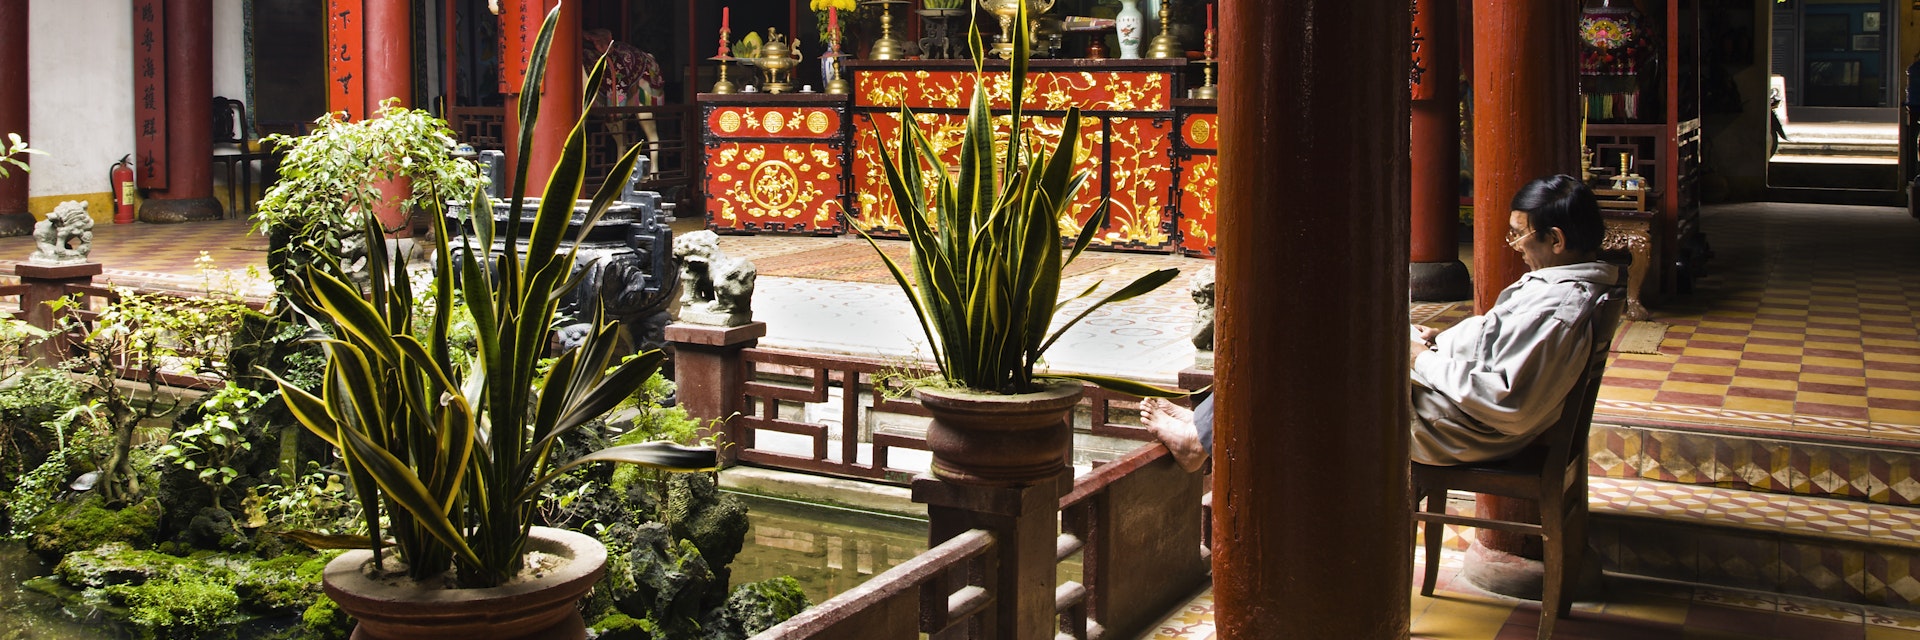 Interior of Quan Cong Temple.